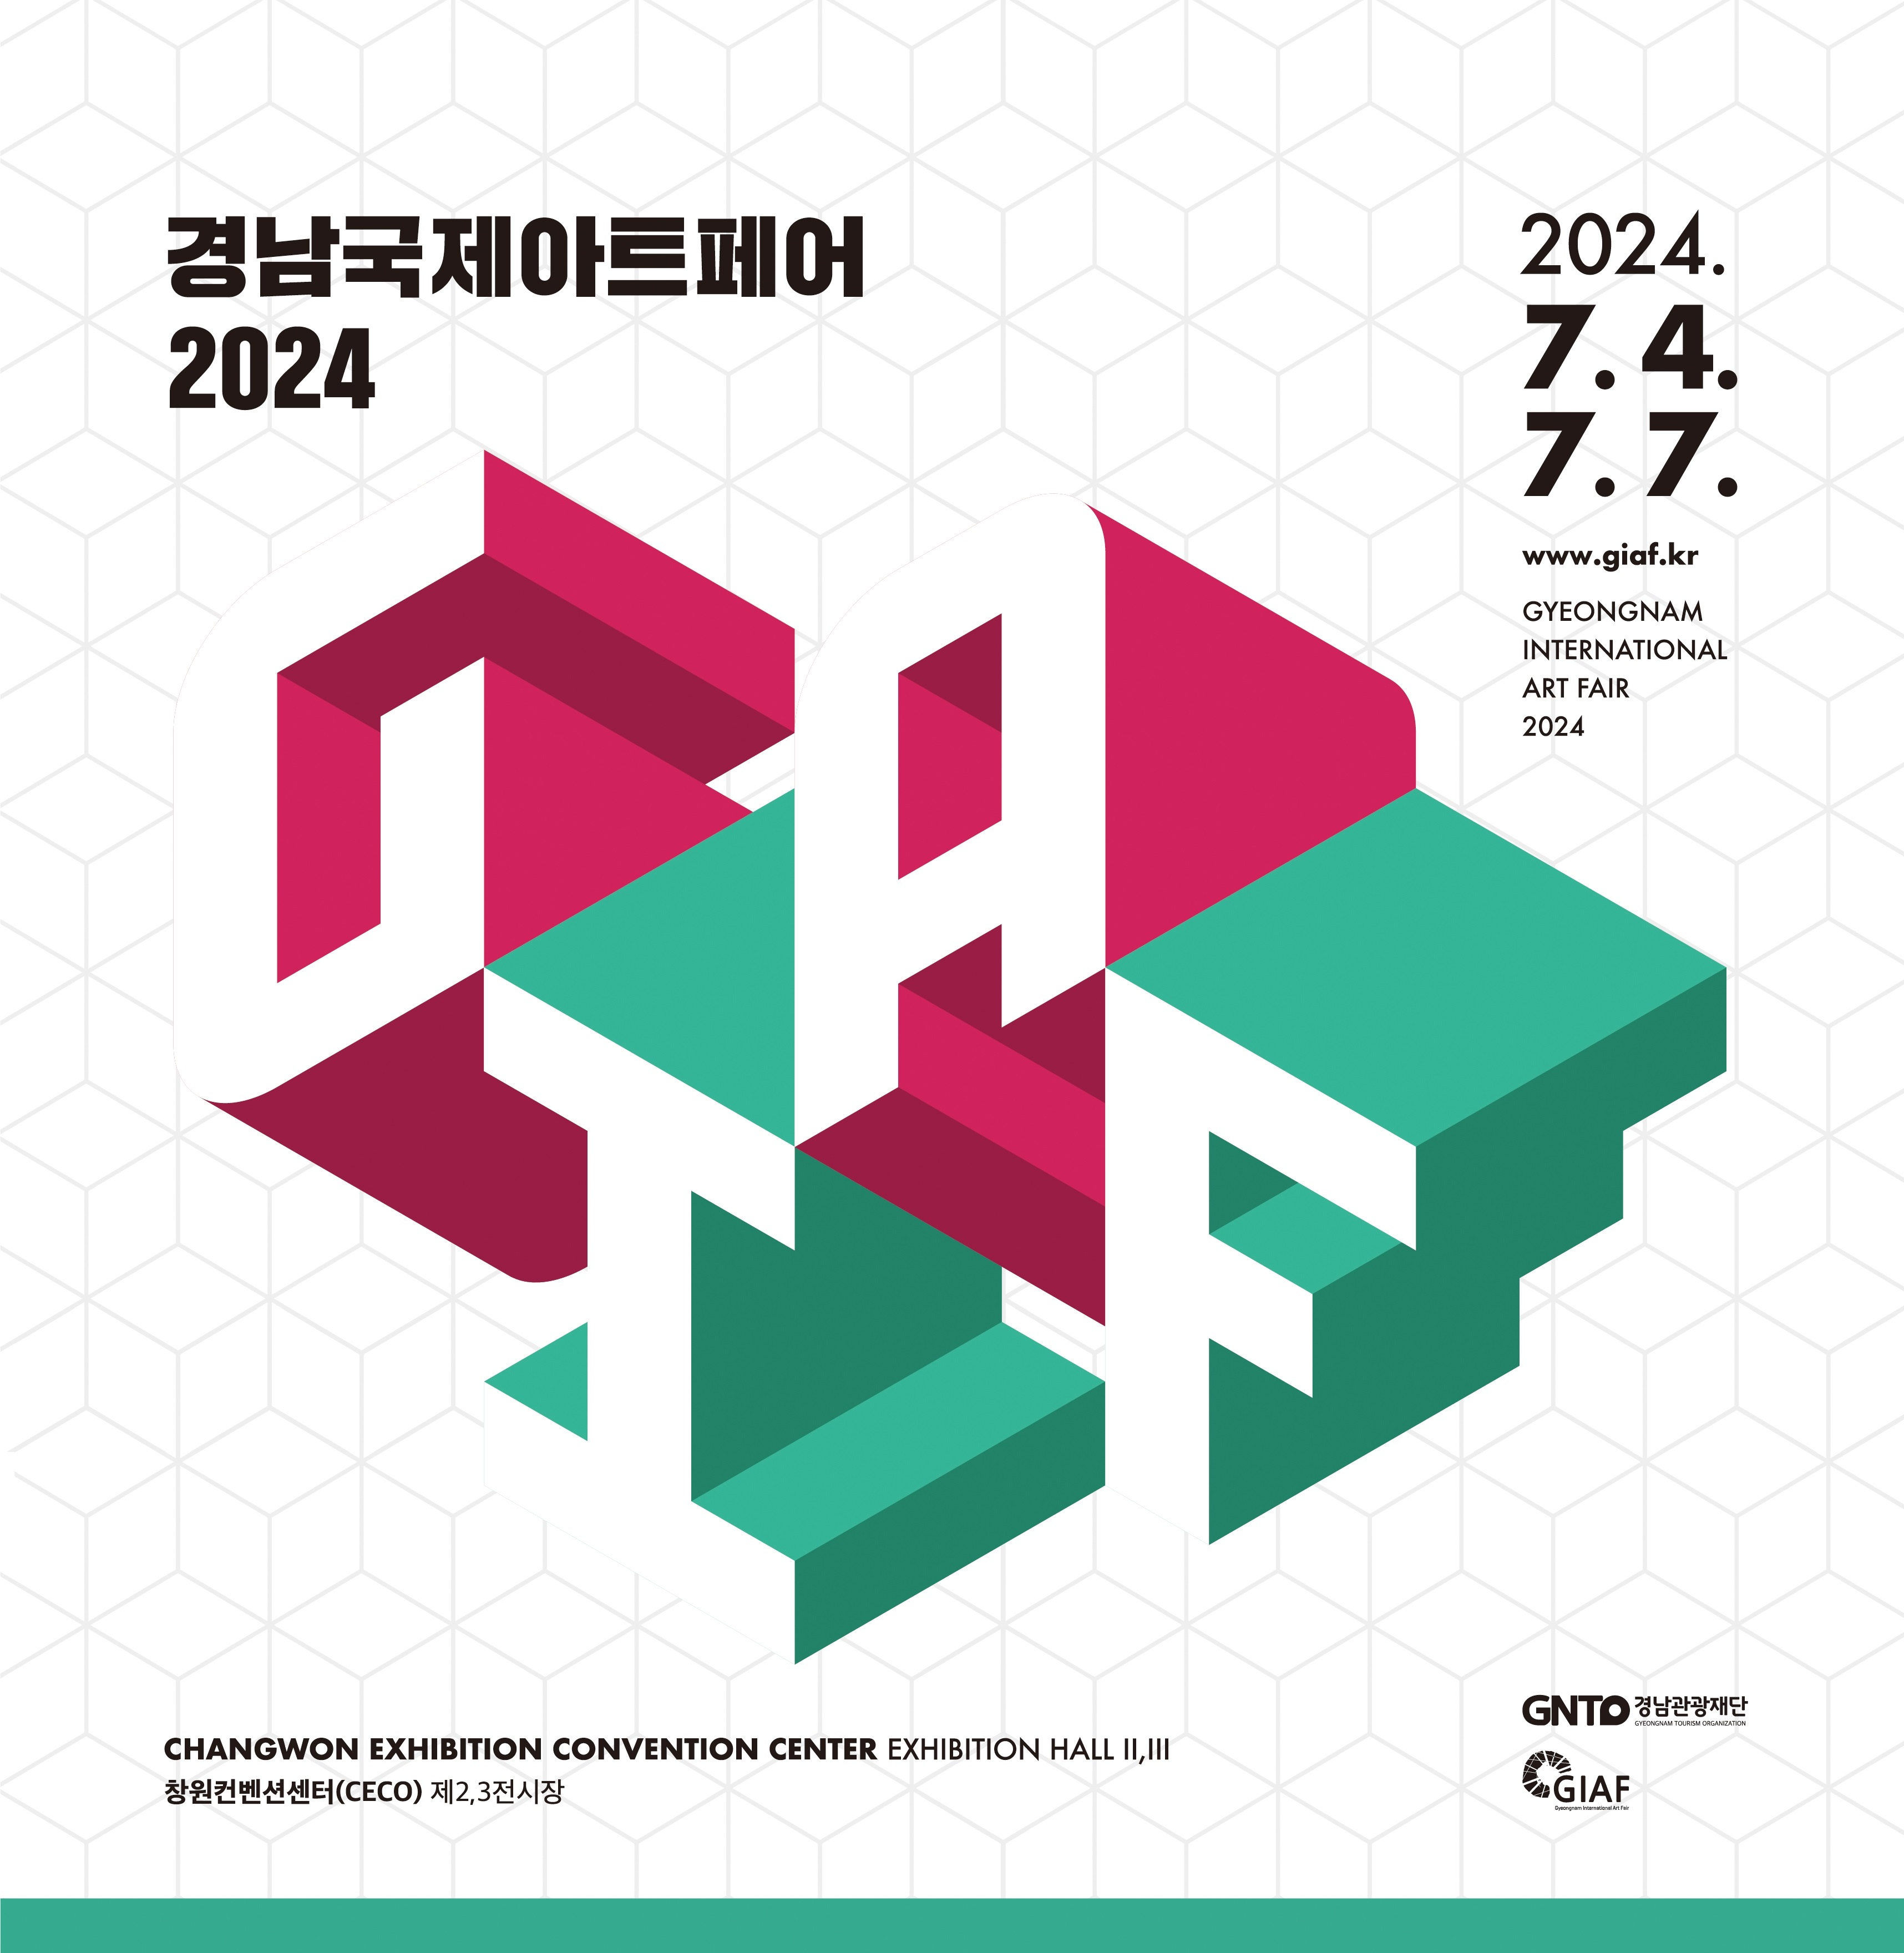 경남국제아트페어 2024
2024
7.4.
7.7
www.giaf.kr
GYEONGNAM INTERNATIONAL ART FAIR 2024